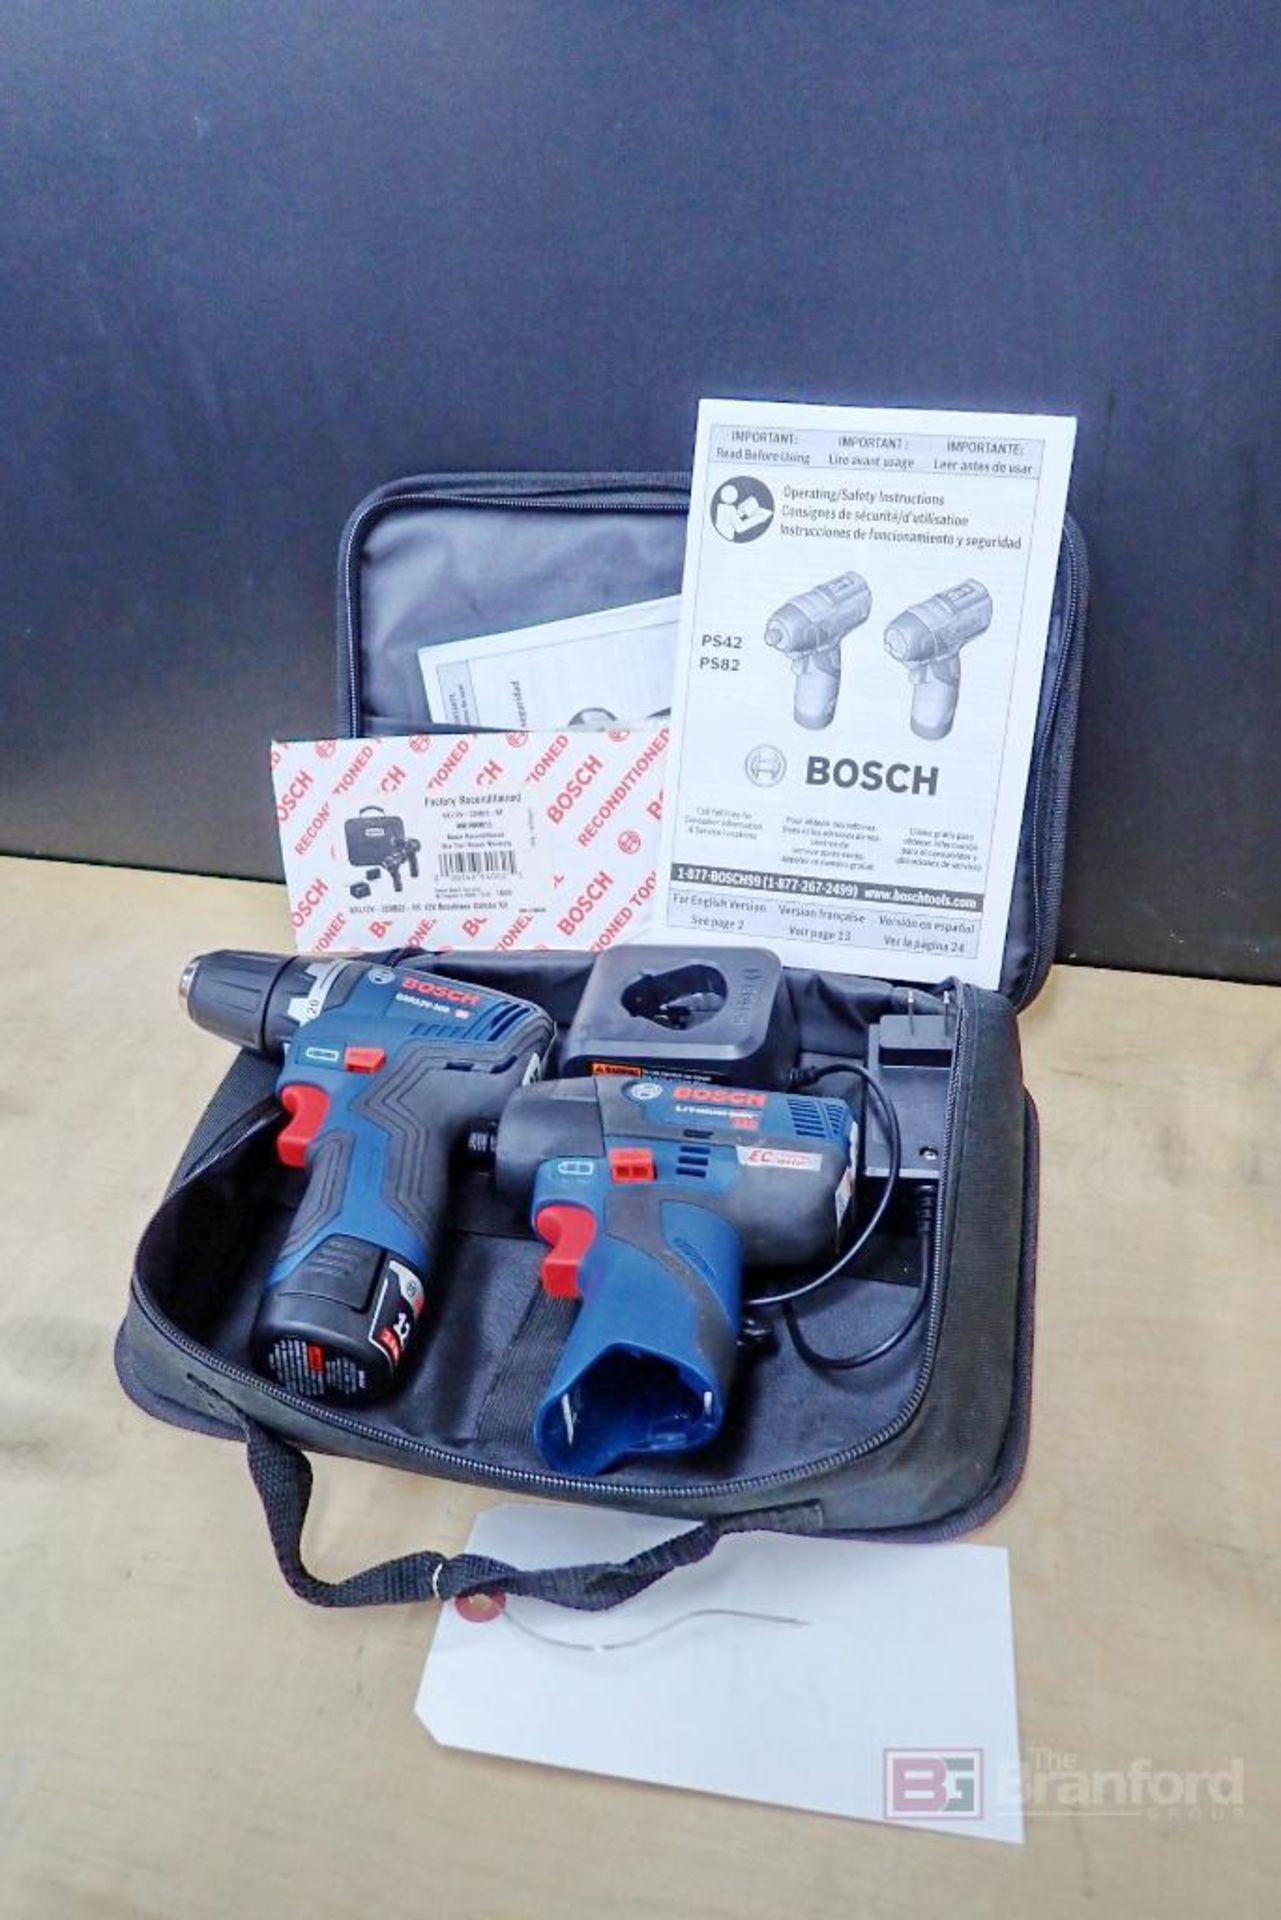 Bosch GXL12V-220B22-RT Brushless Combo Kit w/ Driller - Driver - Image 6 of 6